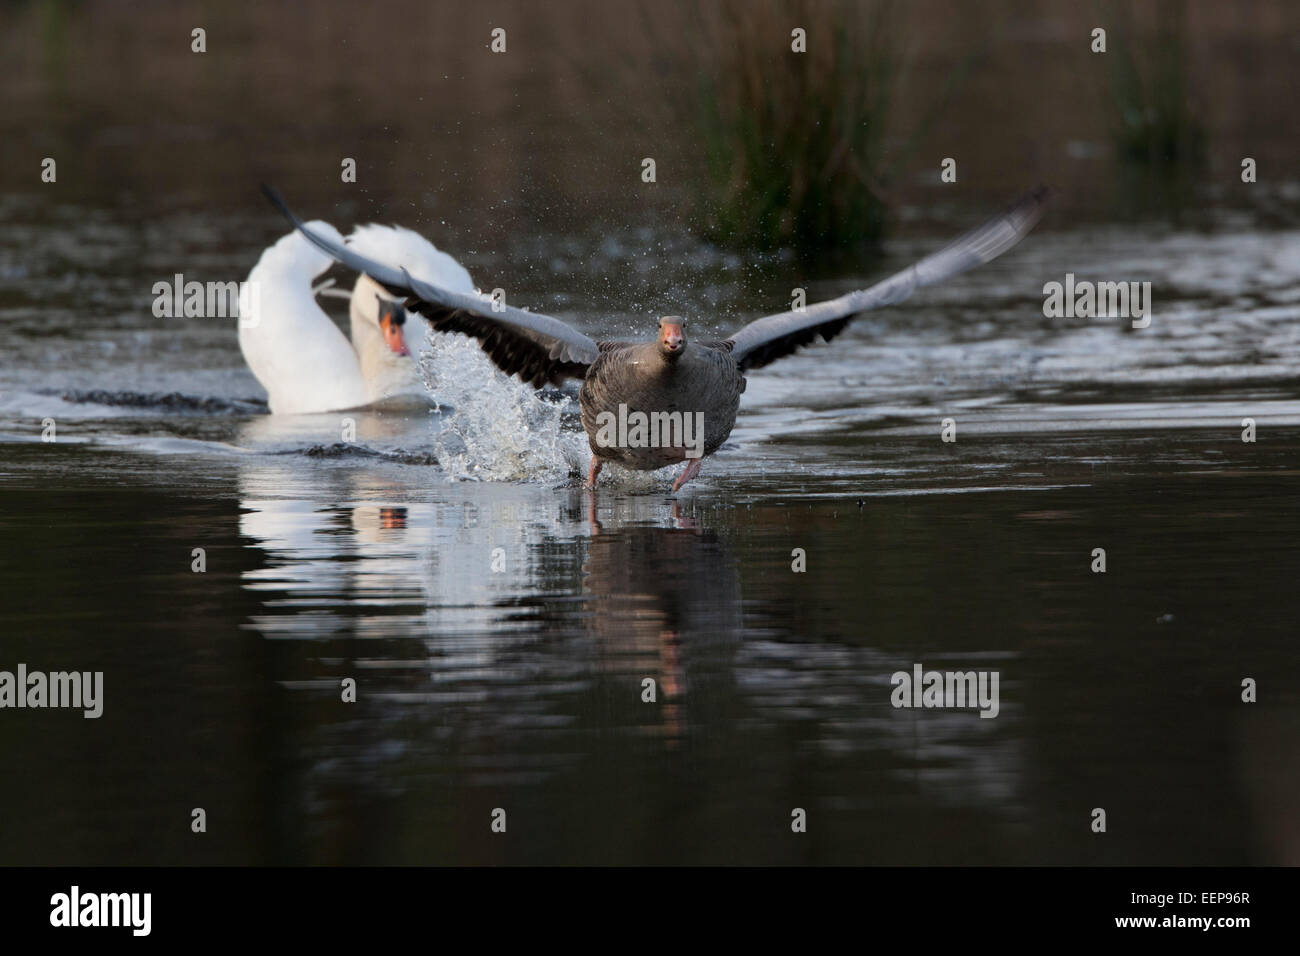 Höckerschwan verfolgt Graugans, Mute Swan pursued Grey Goose Stock Photo